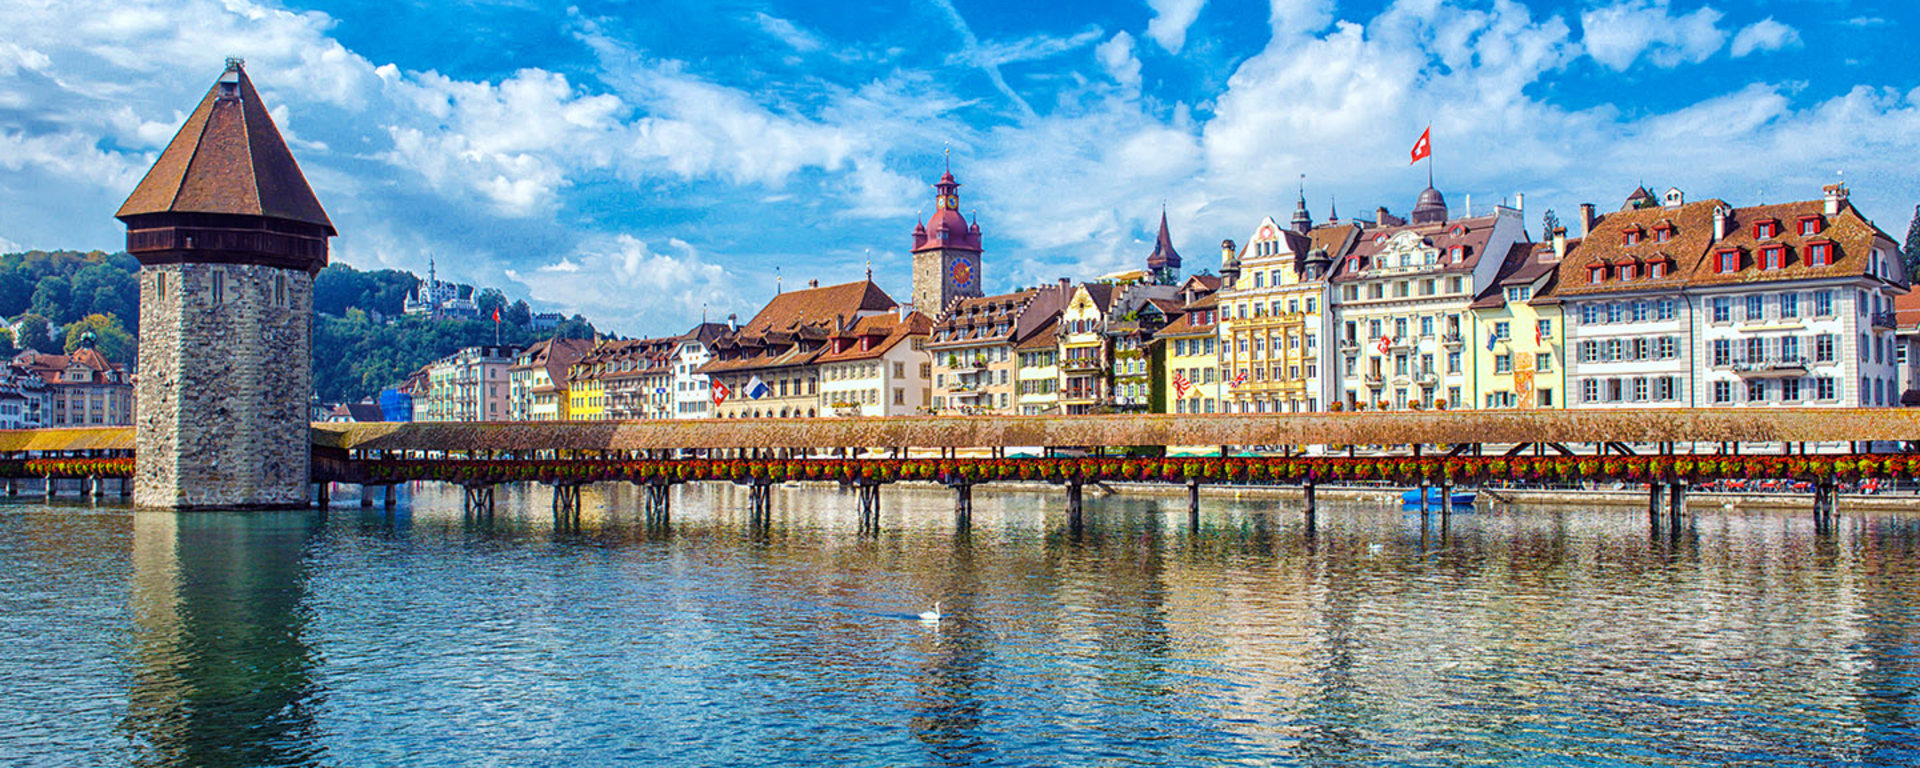 Vontobel Standort in Luzern: Das Stadtbild mit dem Fluss, der es durchschneidet, umgeben von Gebäuden.